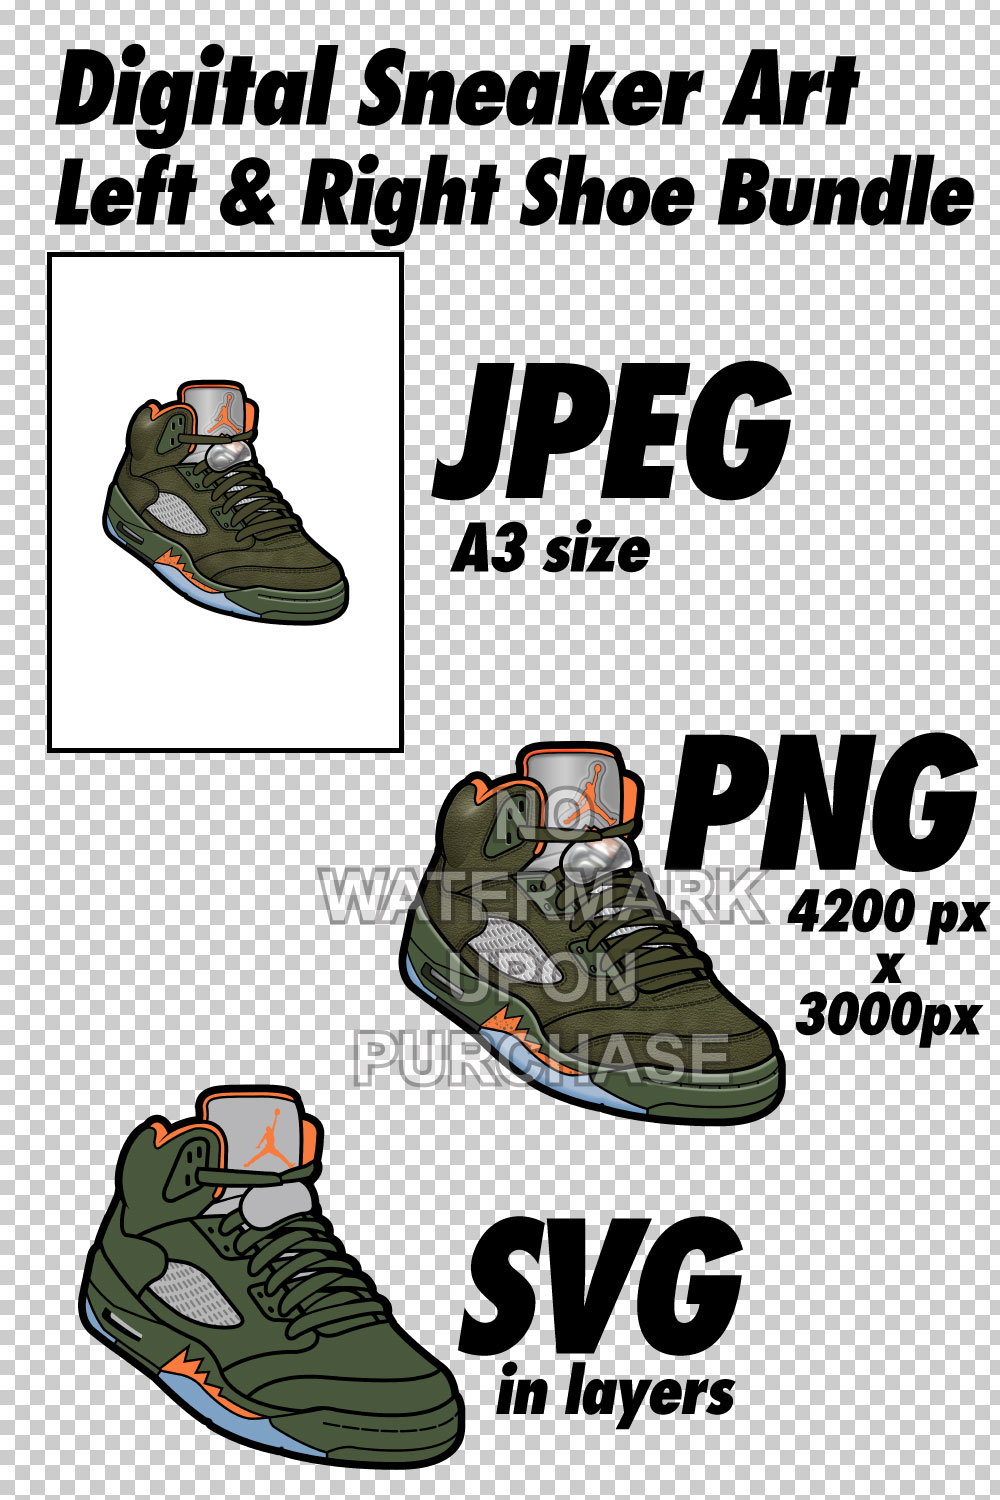 Air Jordan 5 Olive JPEG PNG SVG right & left shoe bundle pinterest preview image.